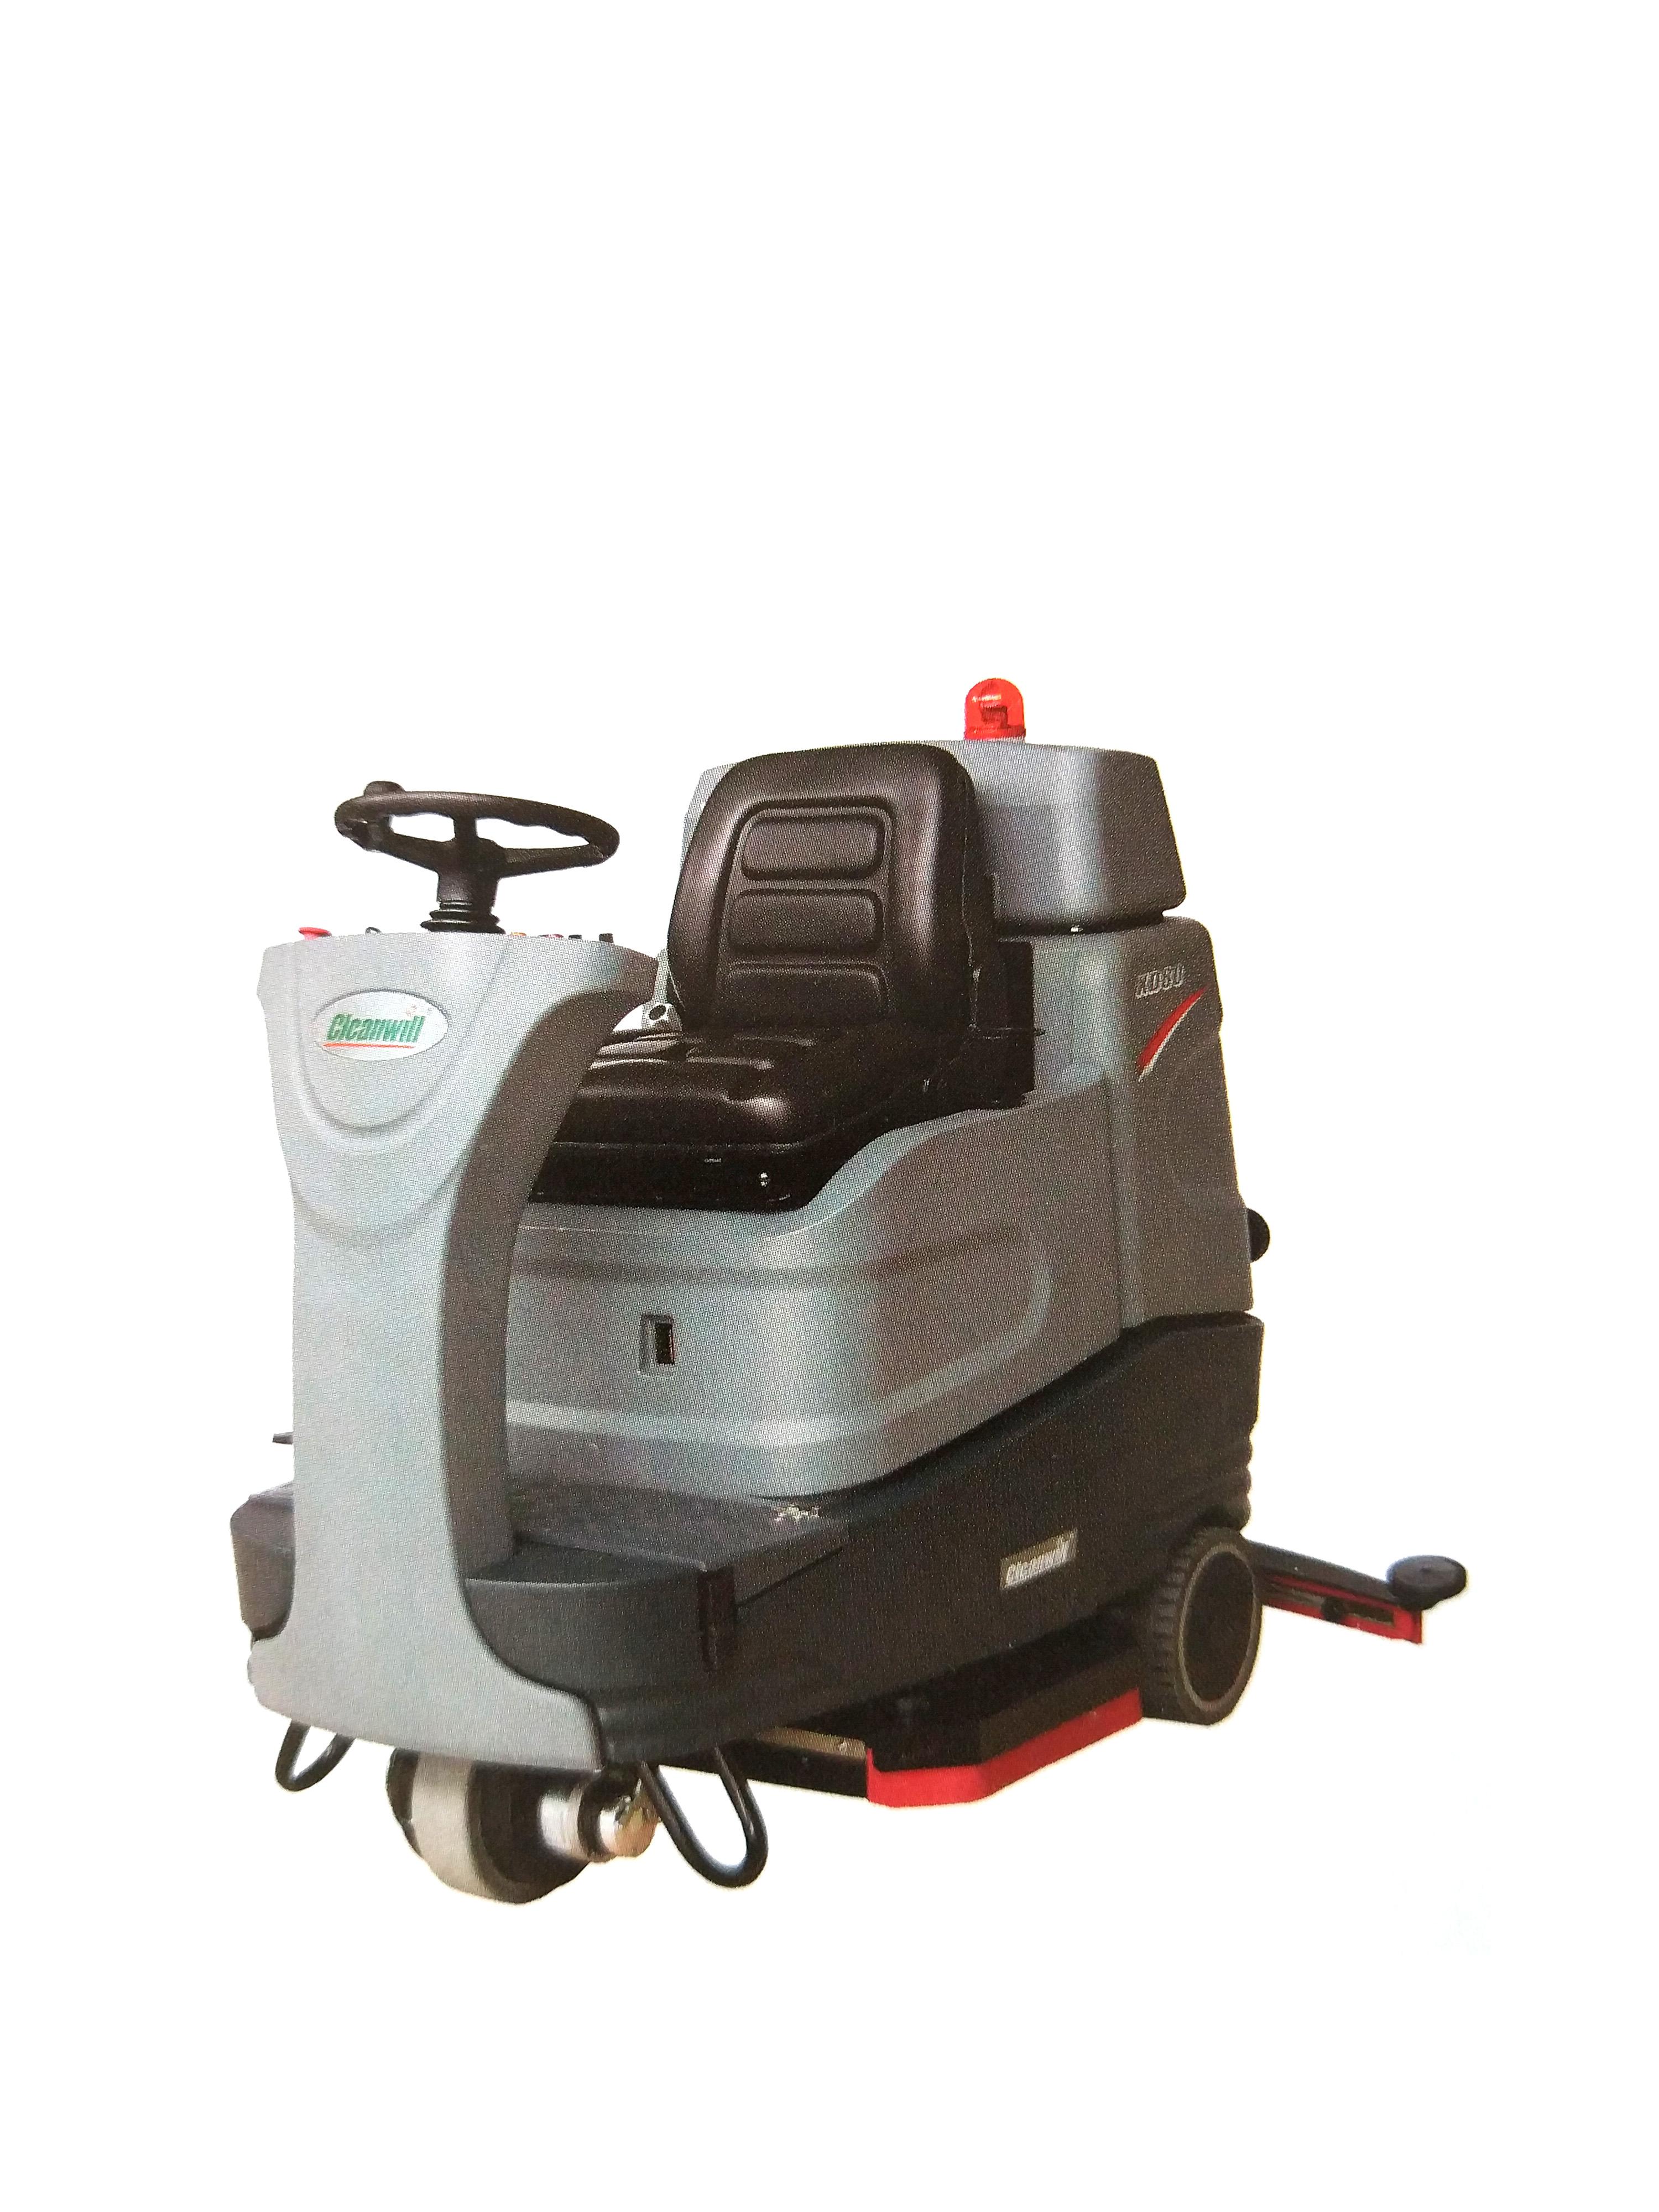 北京自动洗地机XD80物业小区电动驾驶式洗地机厂家供应